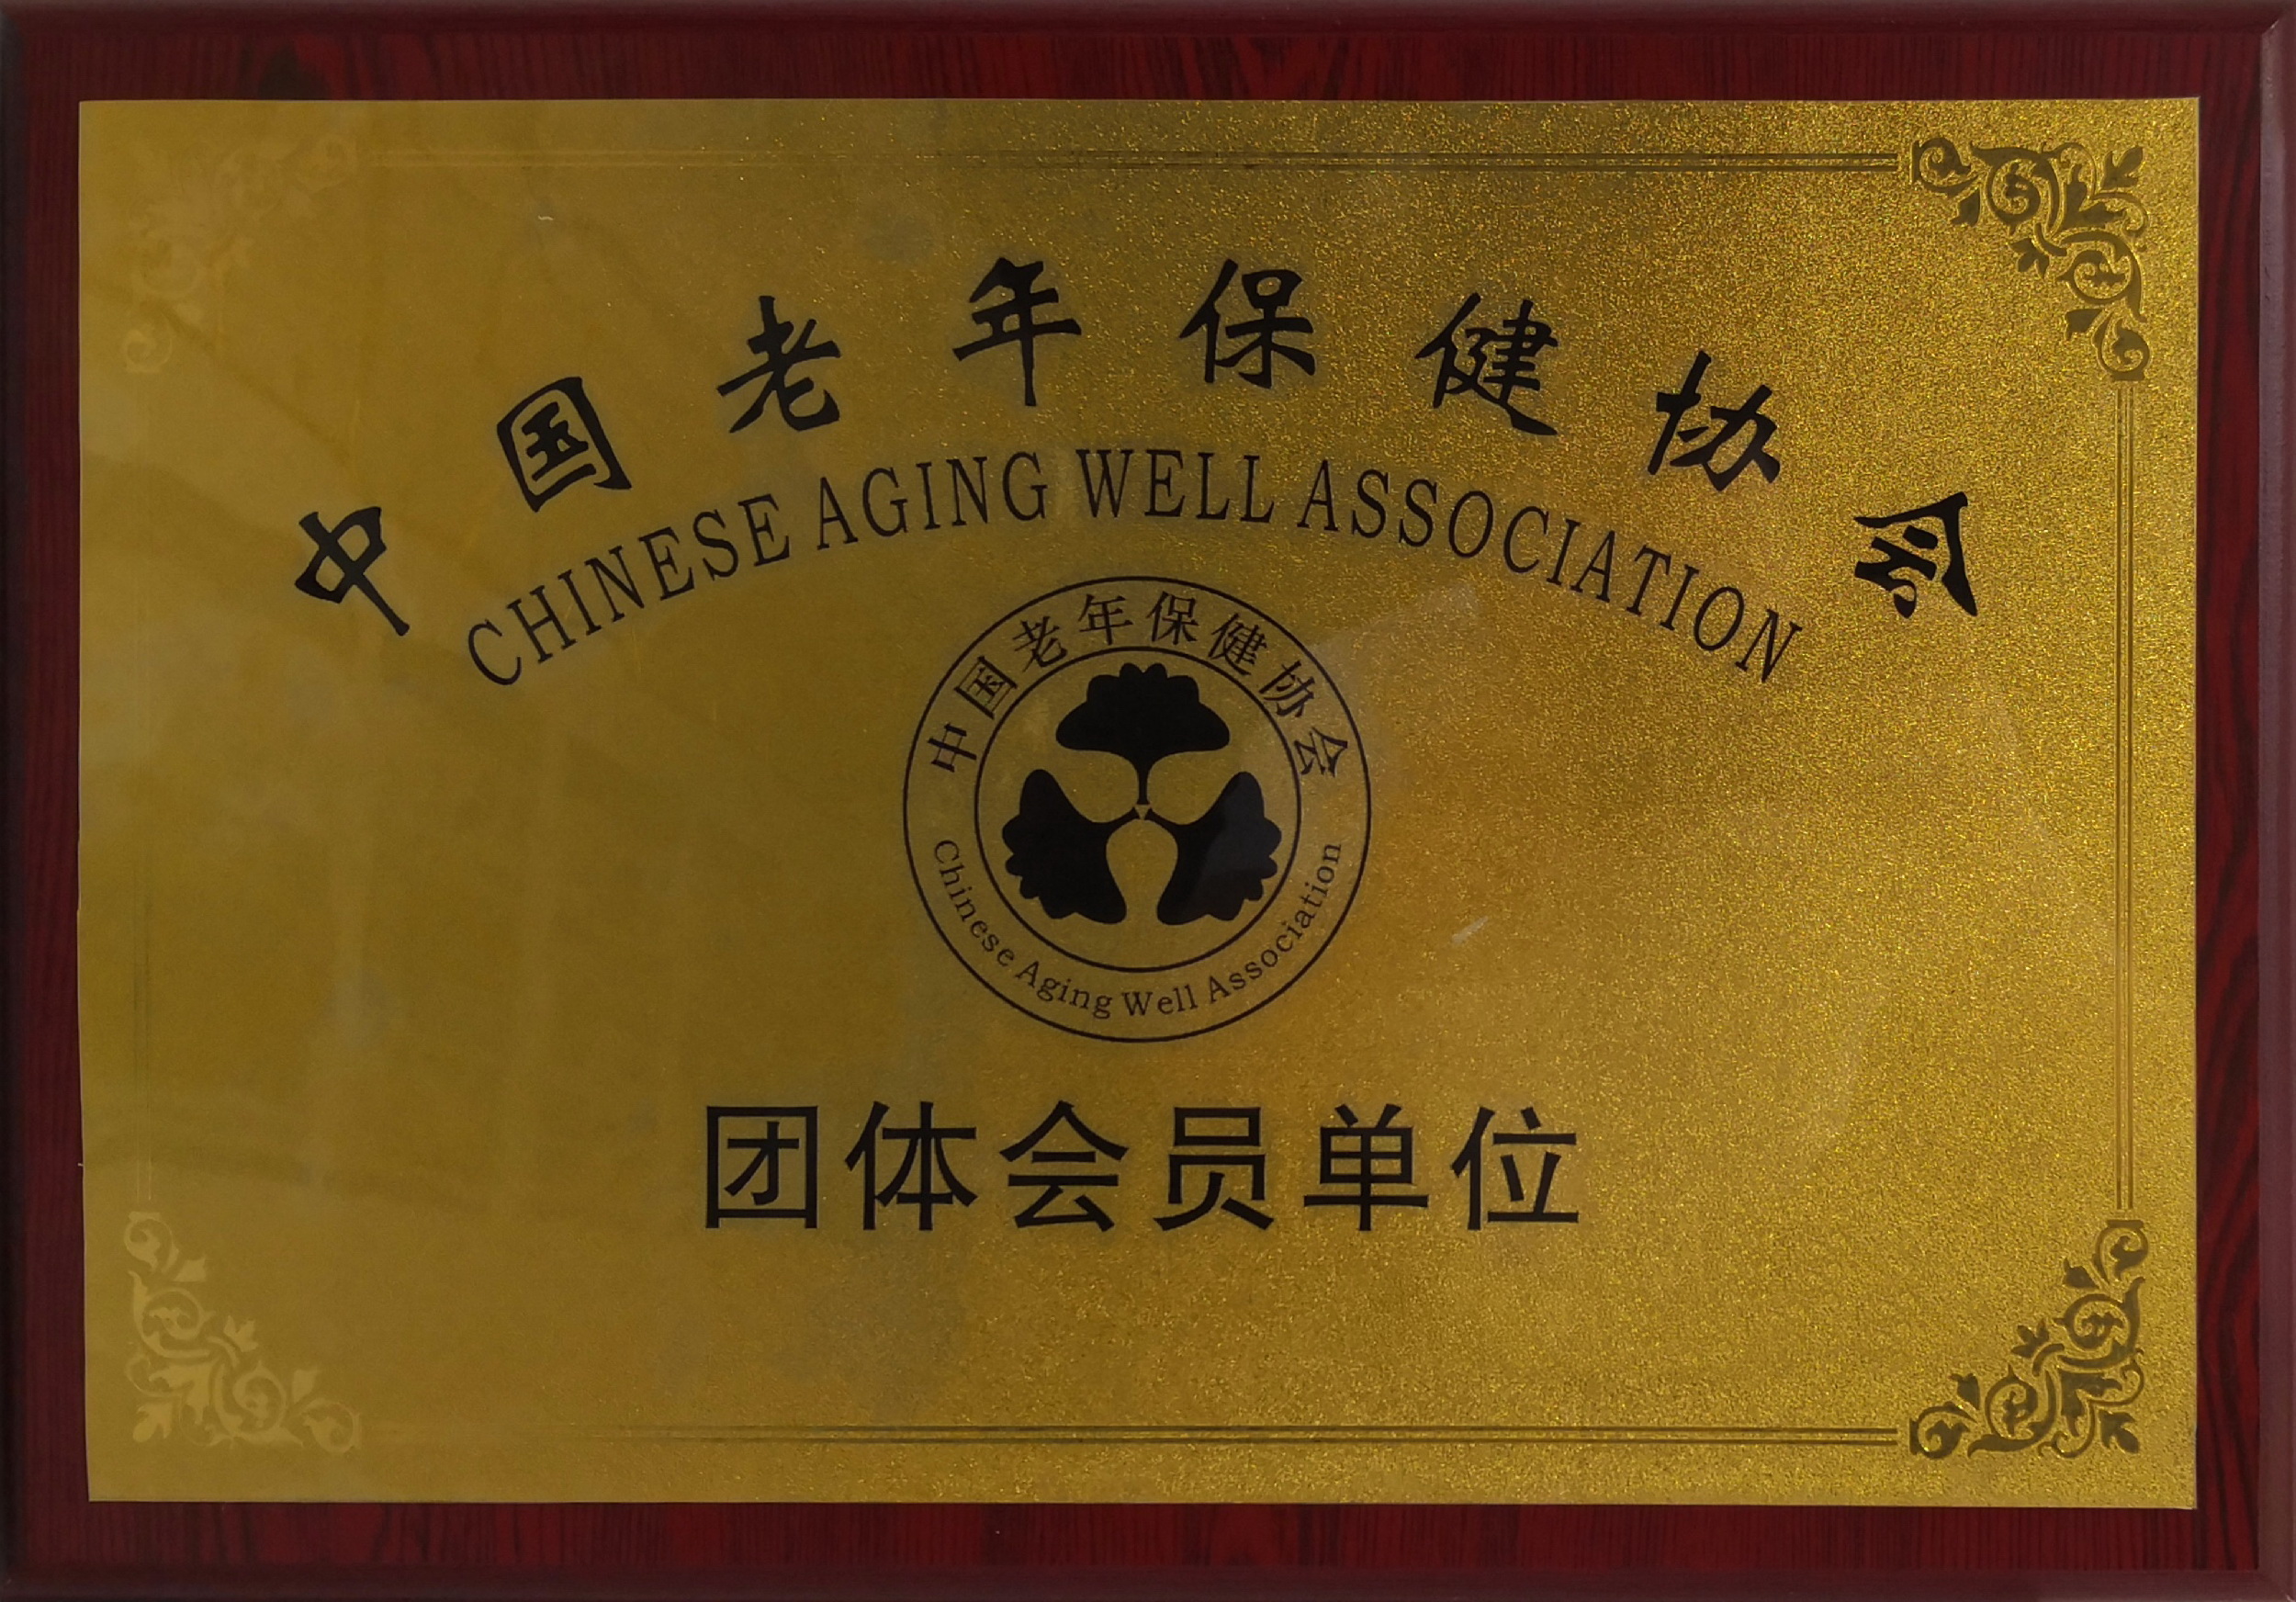 中国老年保健协会团体会员单位